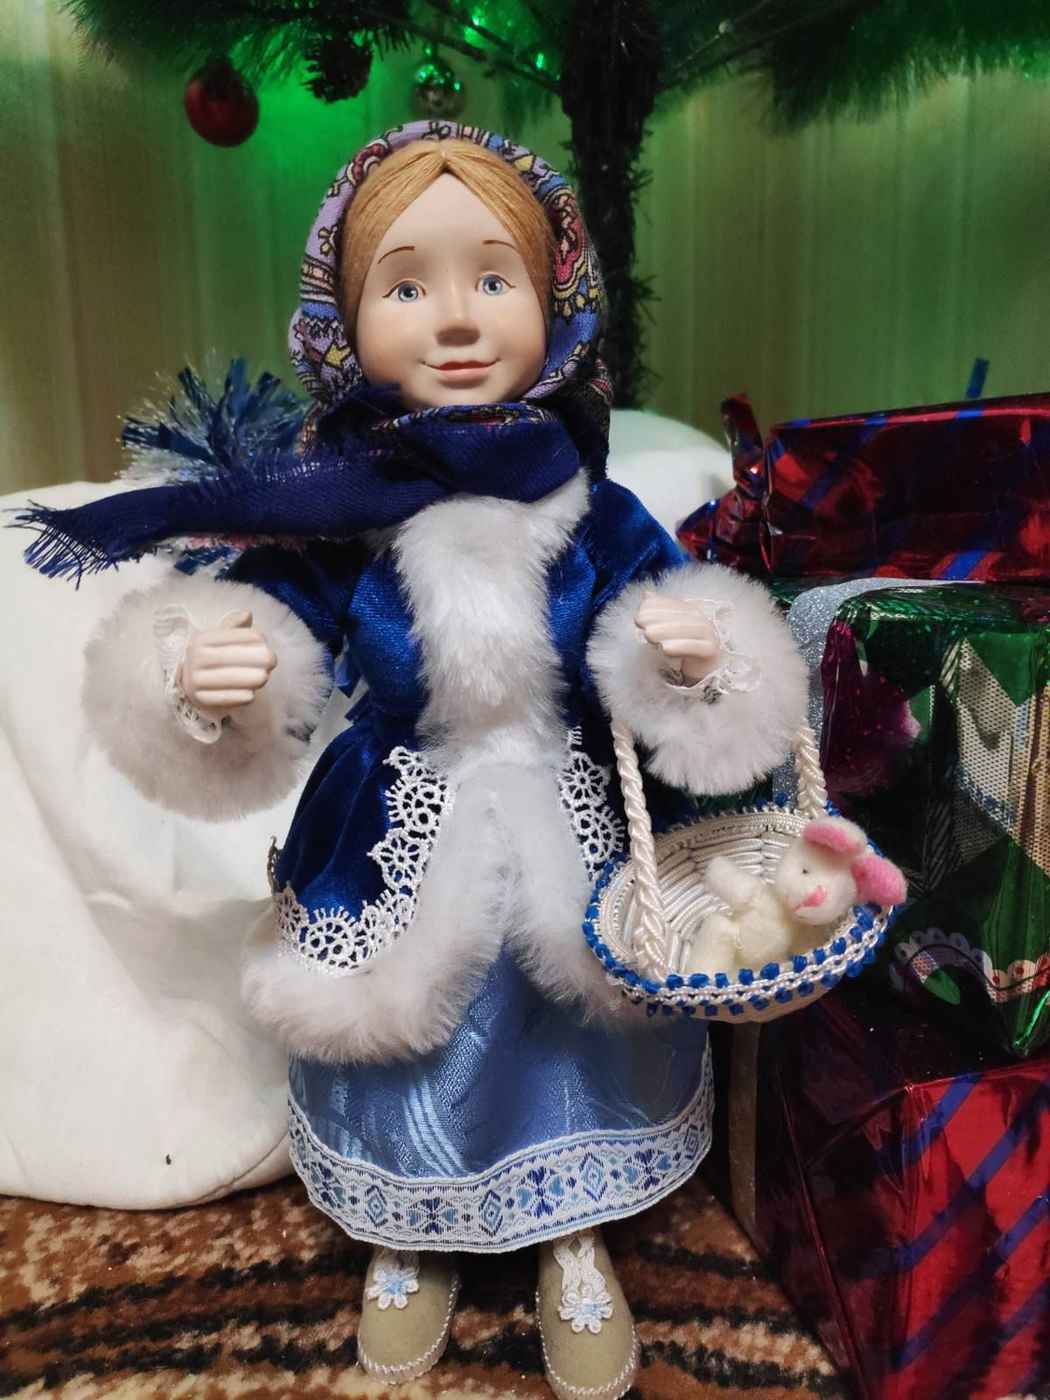 Рубрика «Домашний музей» - Коллекция «Волшебный мир кукол»